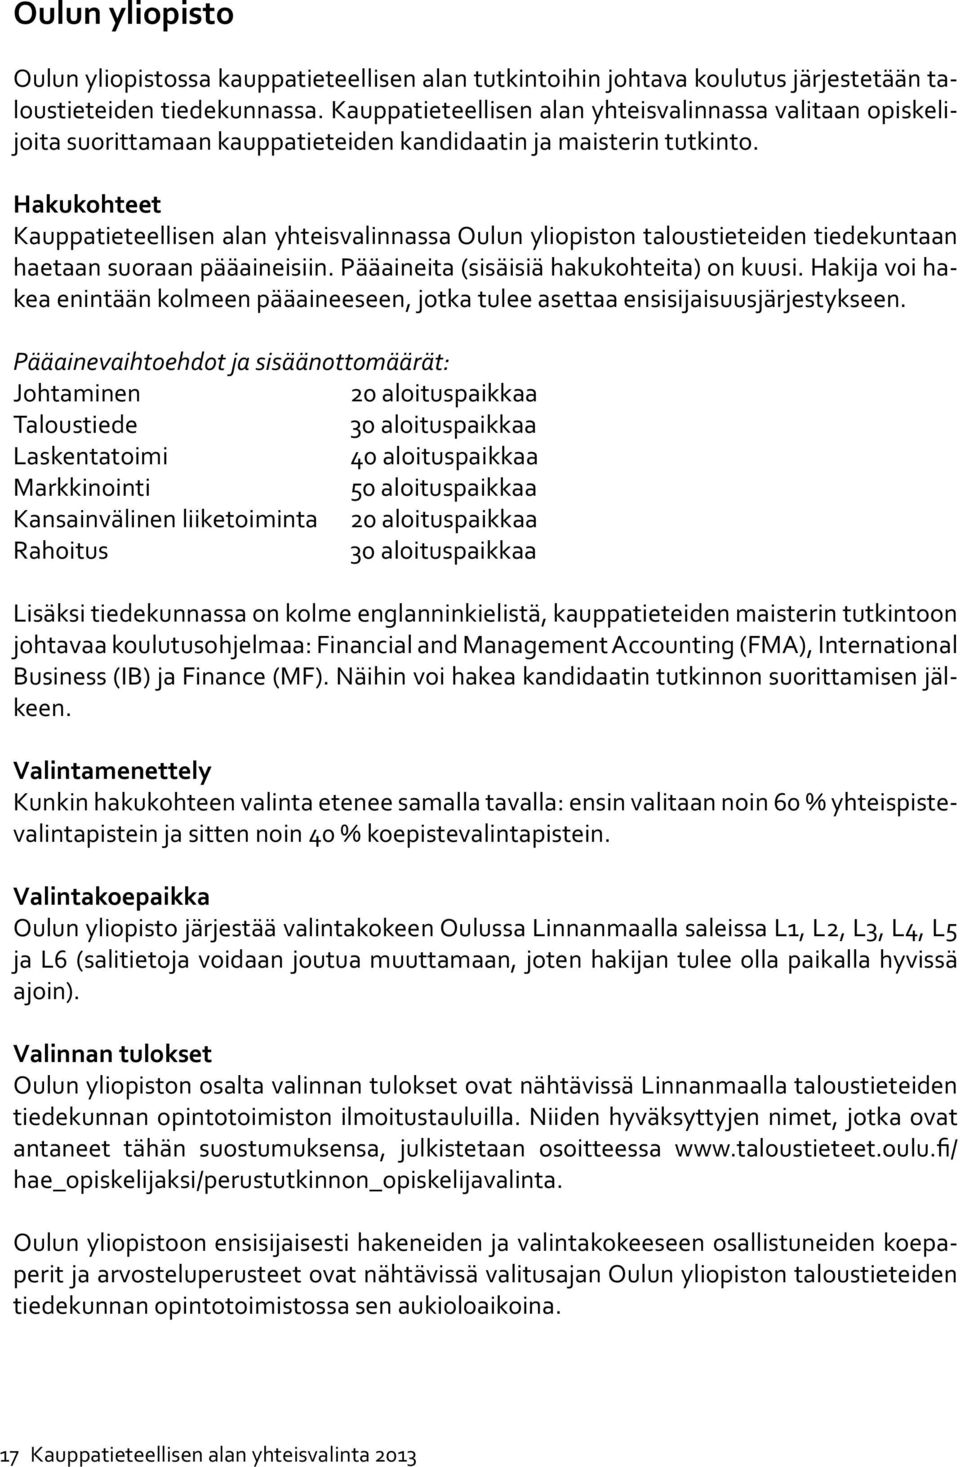 Hakukohteet Kauppatieteellisen alan yhteisvalinnassa Oulun yliopiston taloustieteiden tiedekuntaan haetaan suoraan pääaineisiin. Pääaineita (sisäisiä hakukohteita) on kuusi.